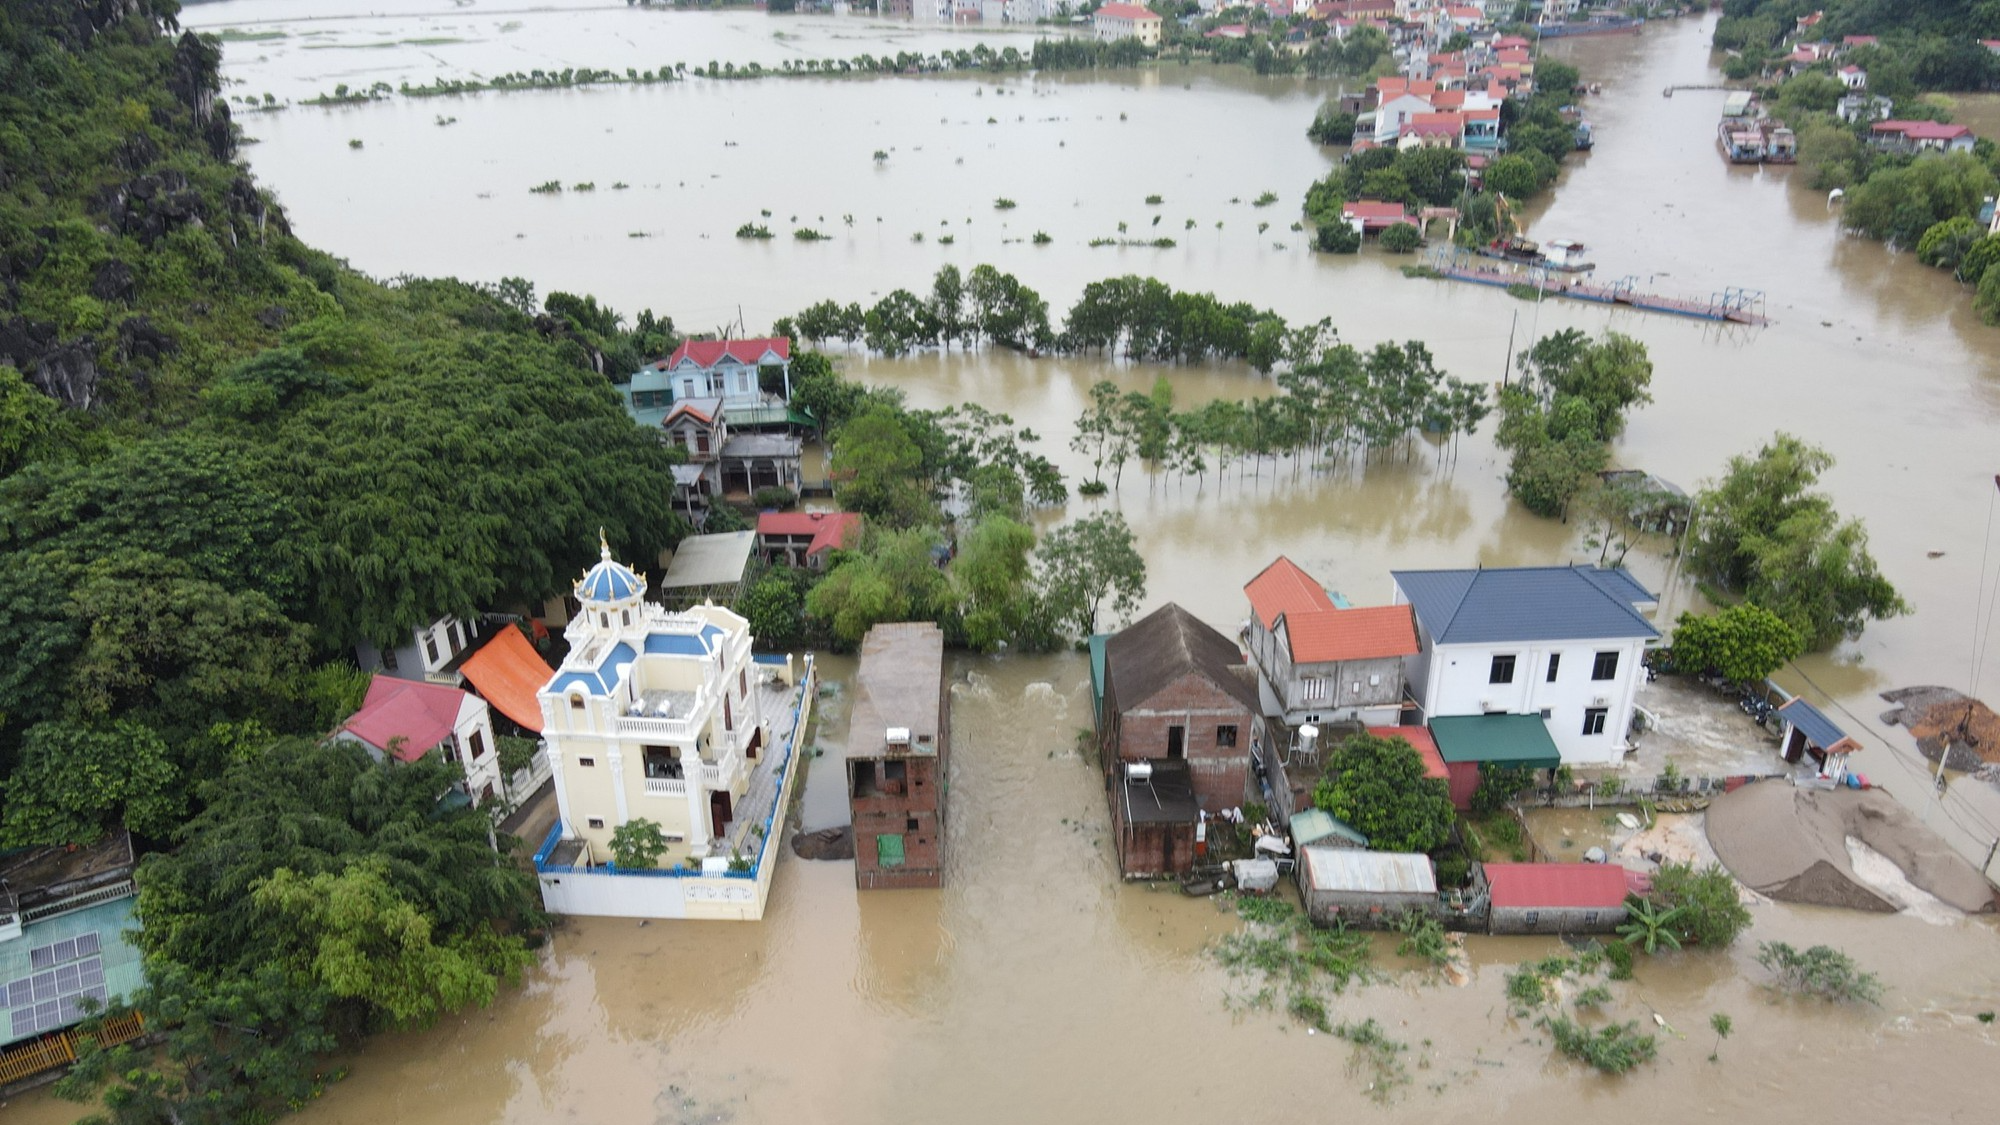 Nước sông Hoàng Long dâng cao gây ngập hàng trăm nhà dân - Ảnh 6.